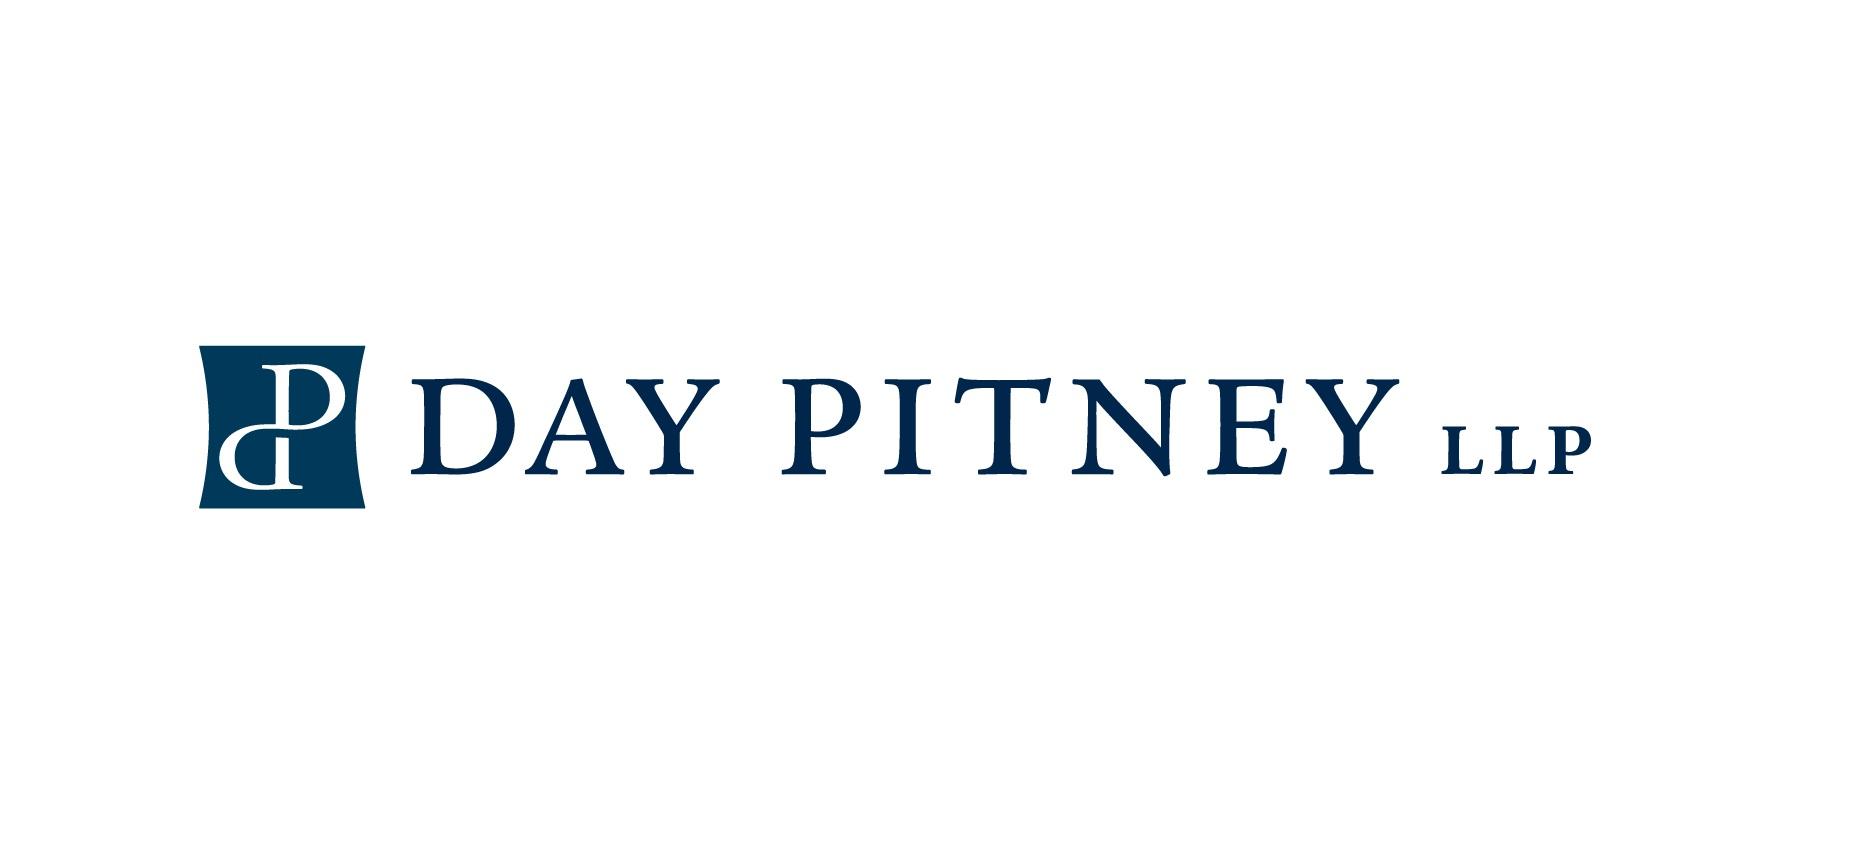 Day Pitney Logo